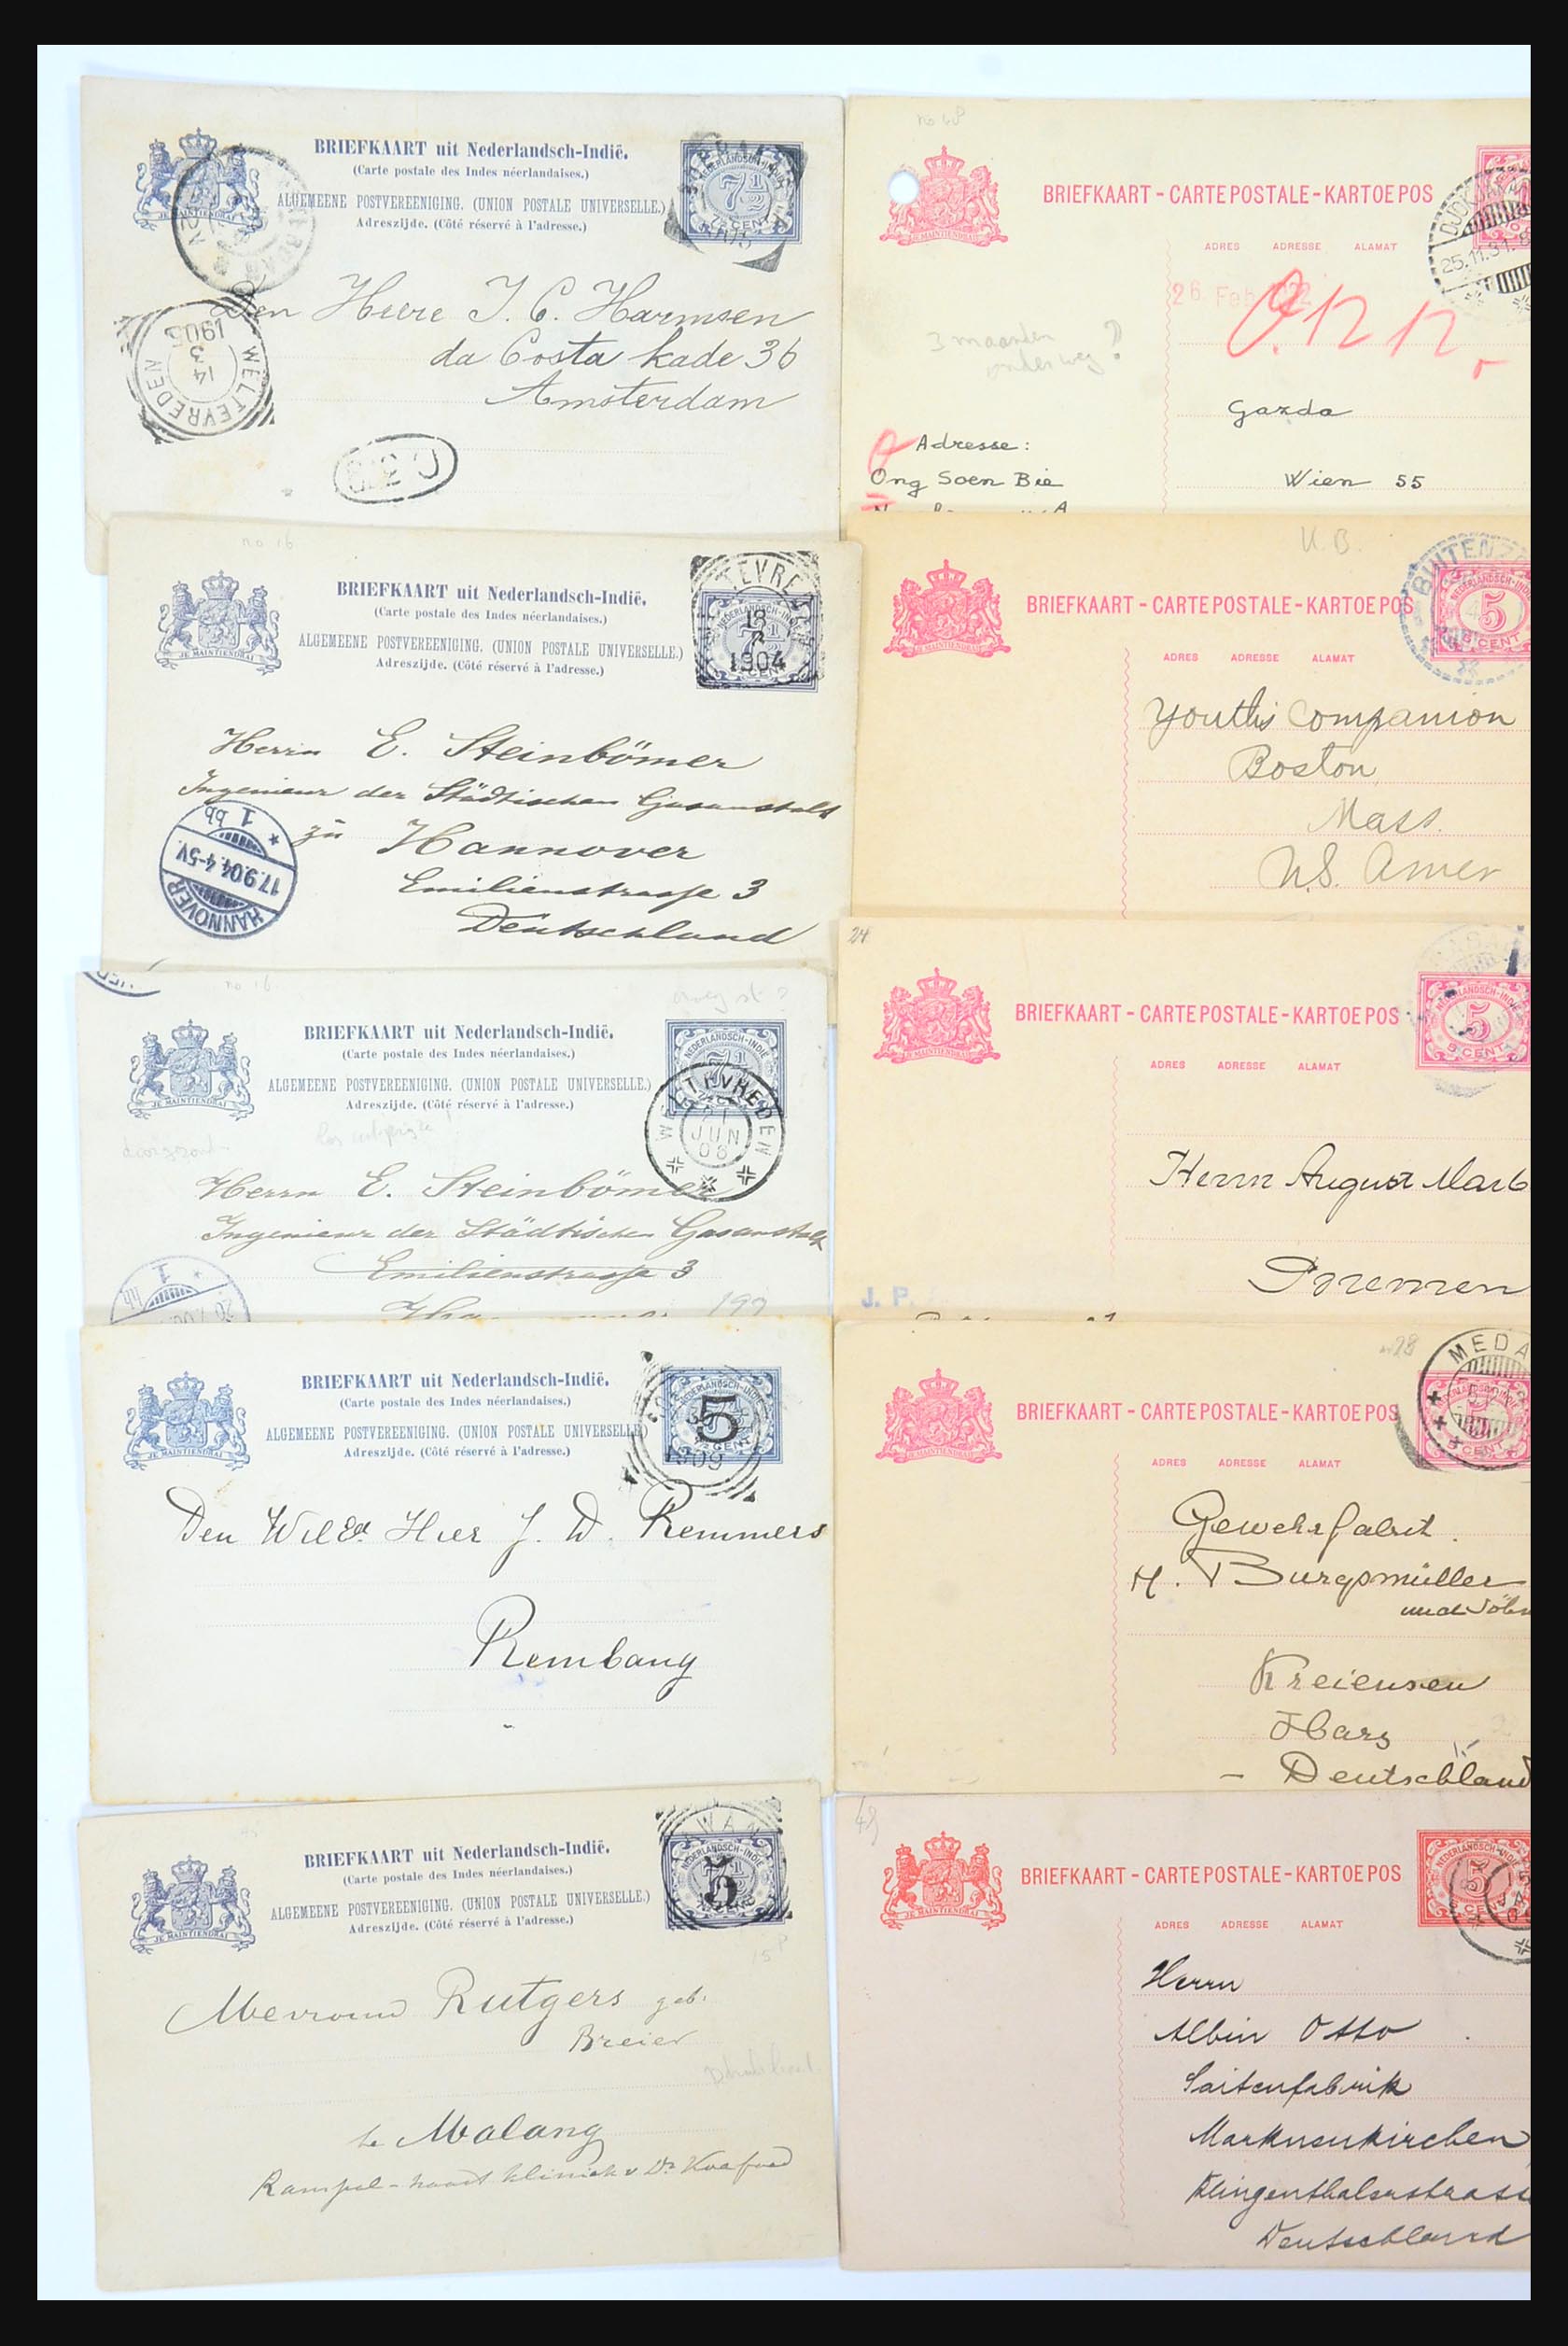 31361 017 - 31361 Nederlands Indië brieven 1880-1950.